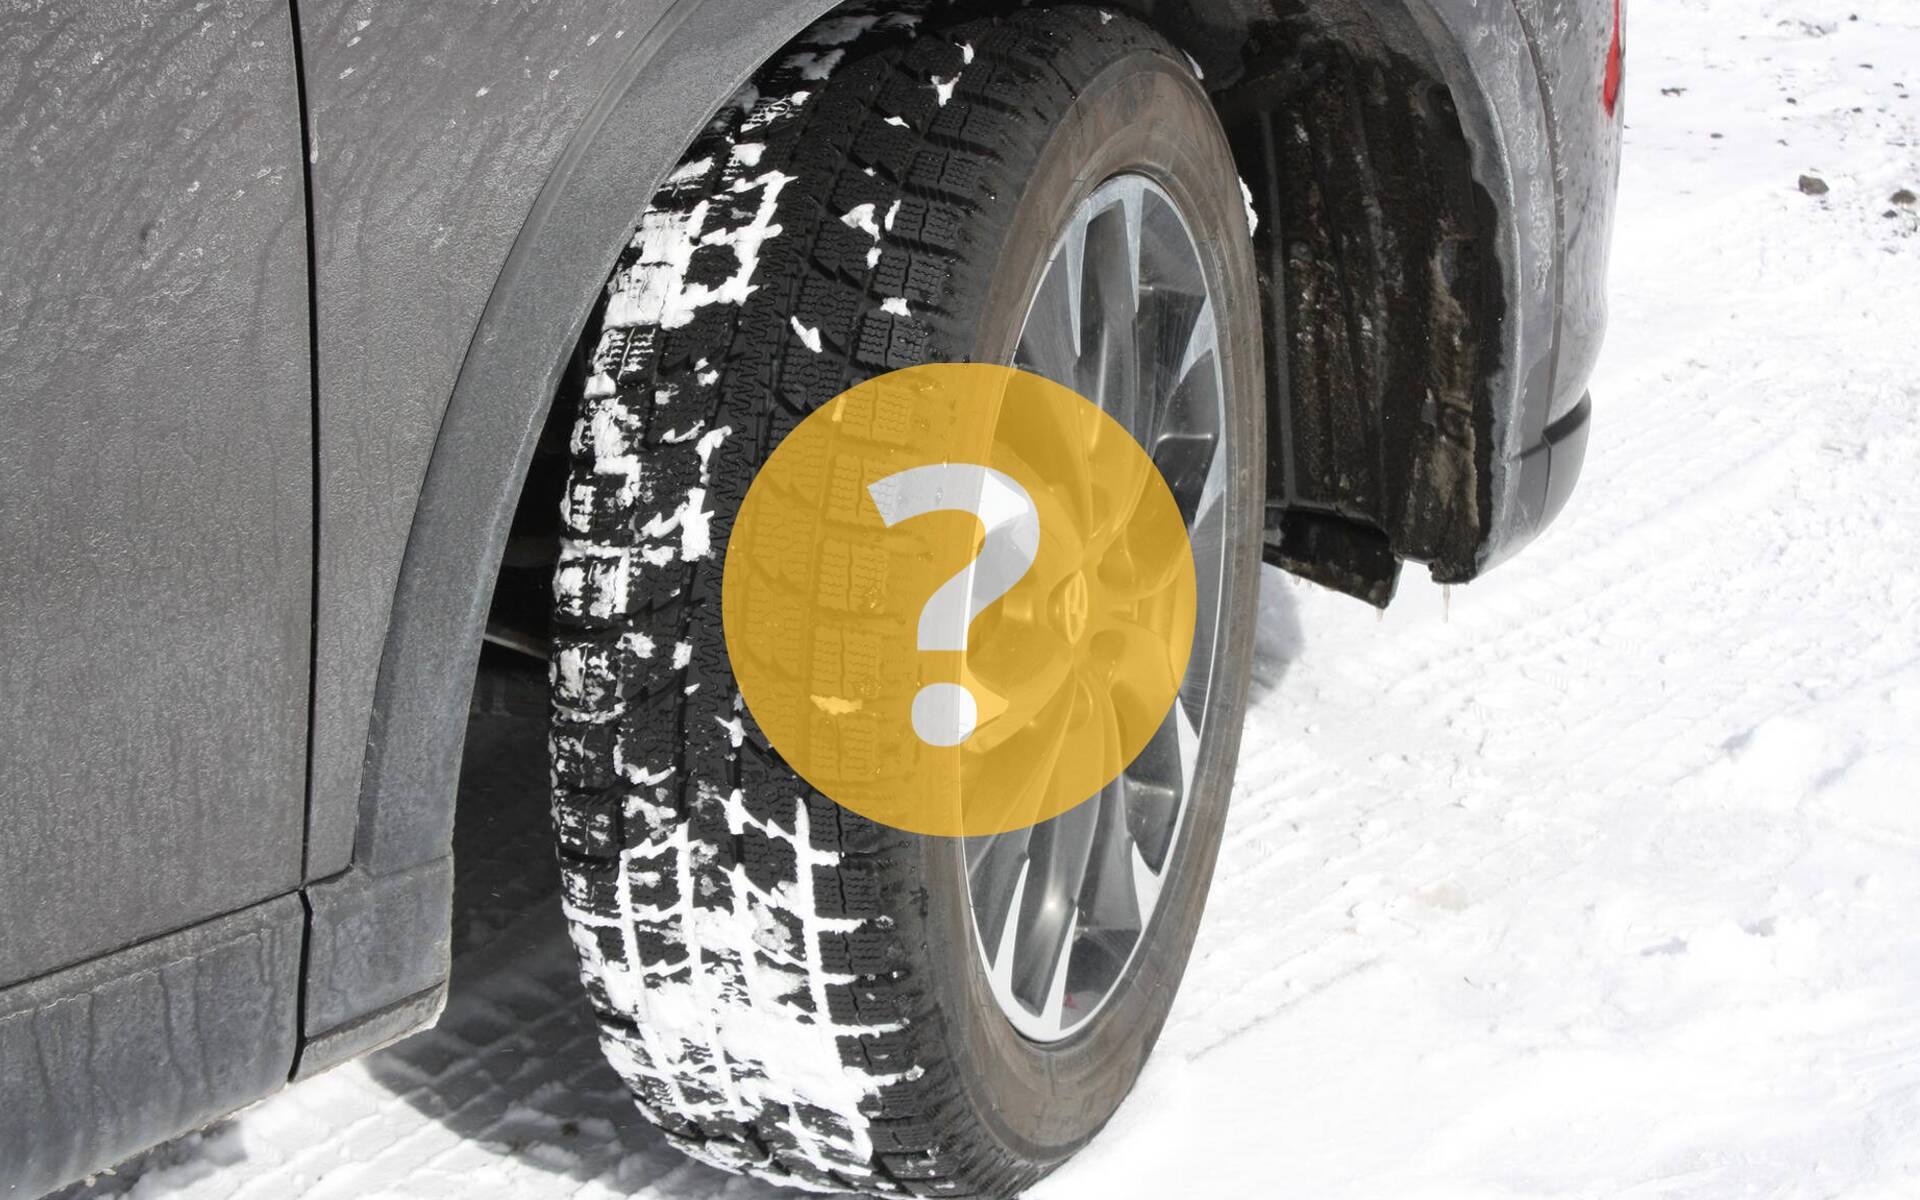 Rouage intégral ou pneus d’hiver : quelle option est la meilleure?